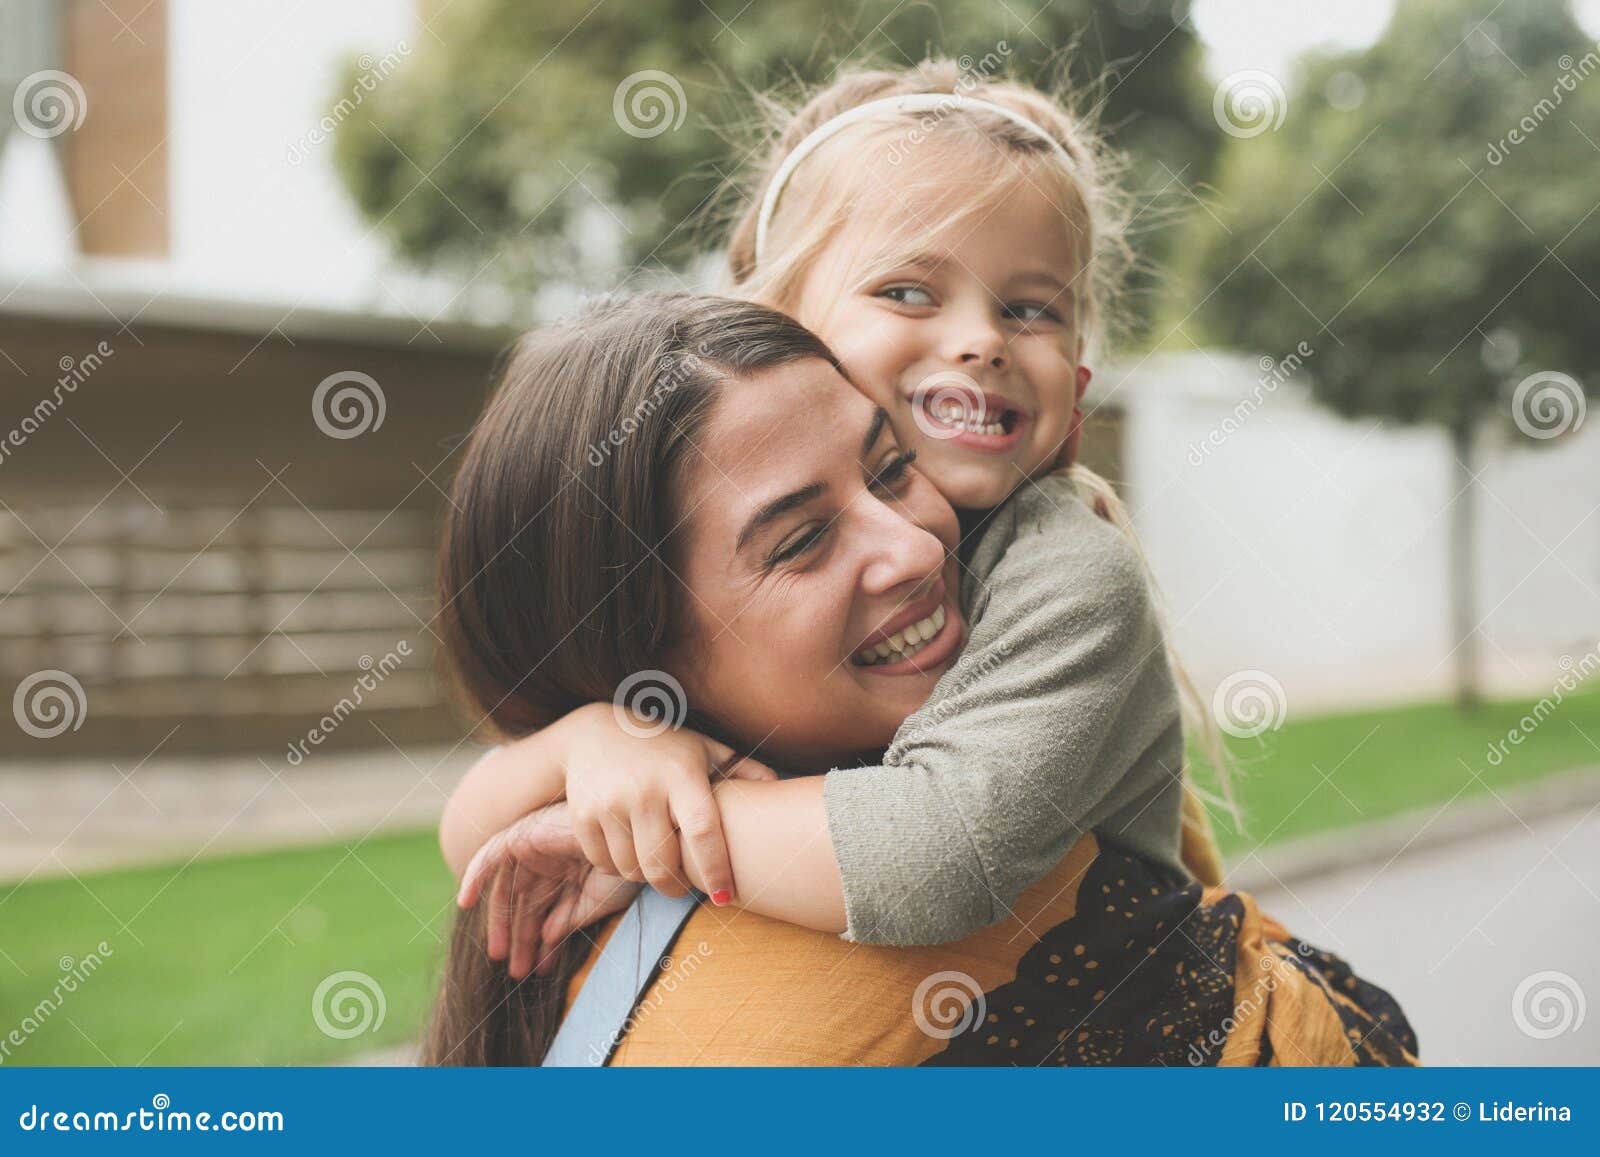 little girl in moms hug.